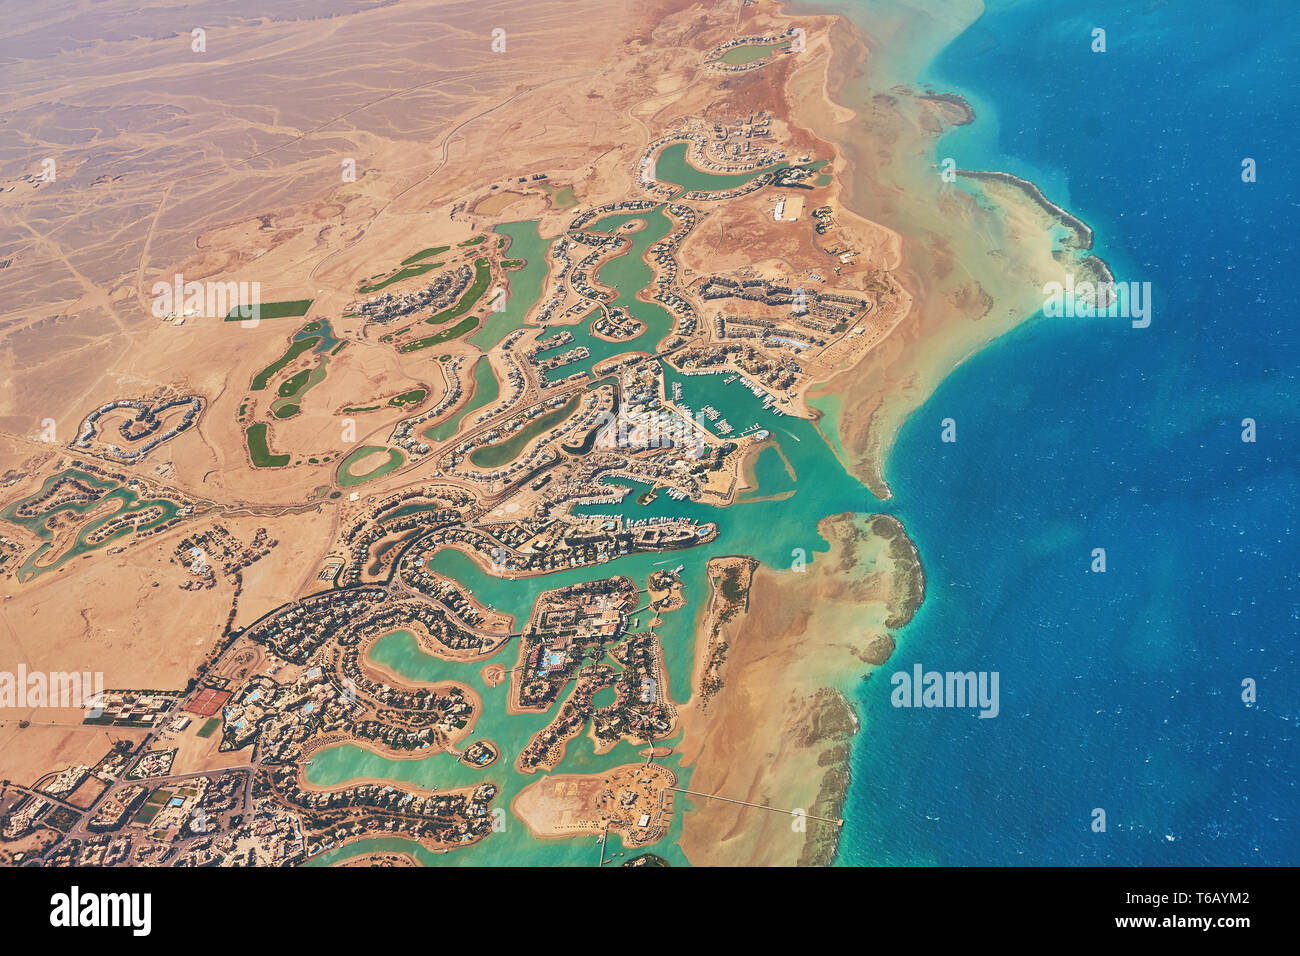 Vue aérienne d'El Gouna une station touristique égyptien de luxe situé sur la mer Rouge à 20 kilomètres au nord d'Hurghada. Banque D'Images